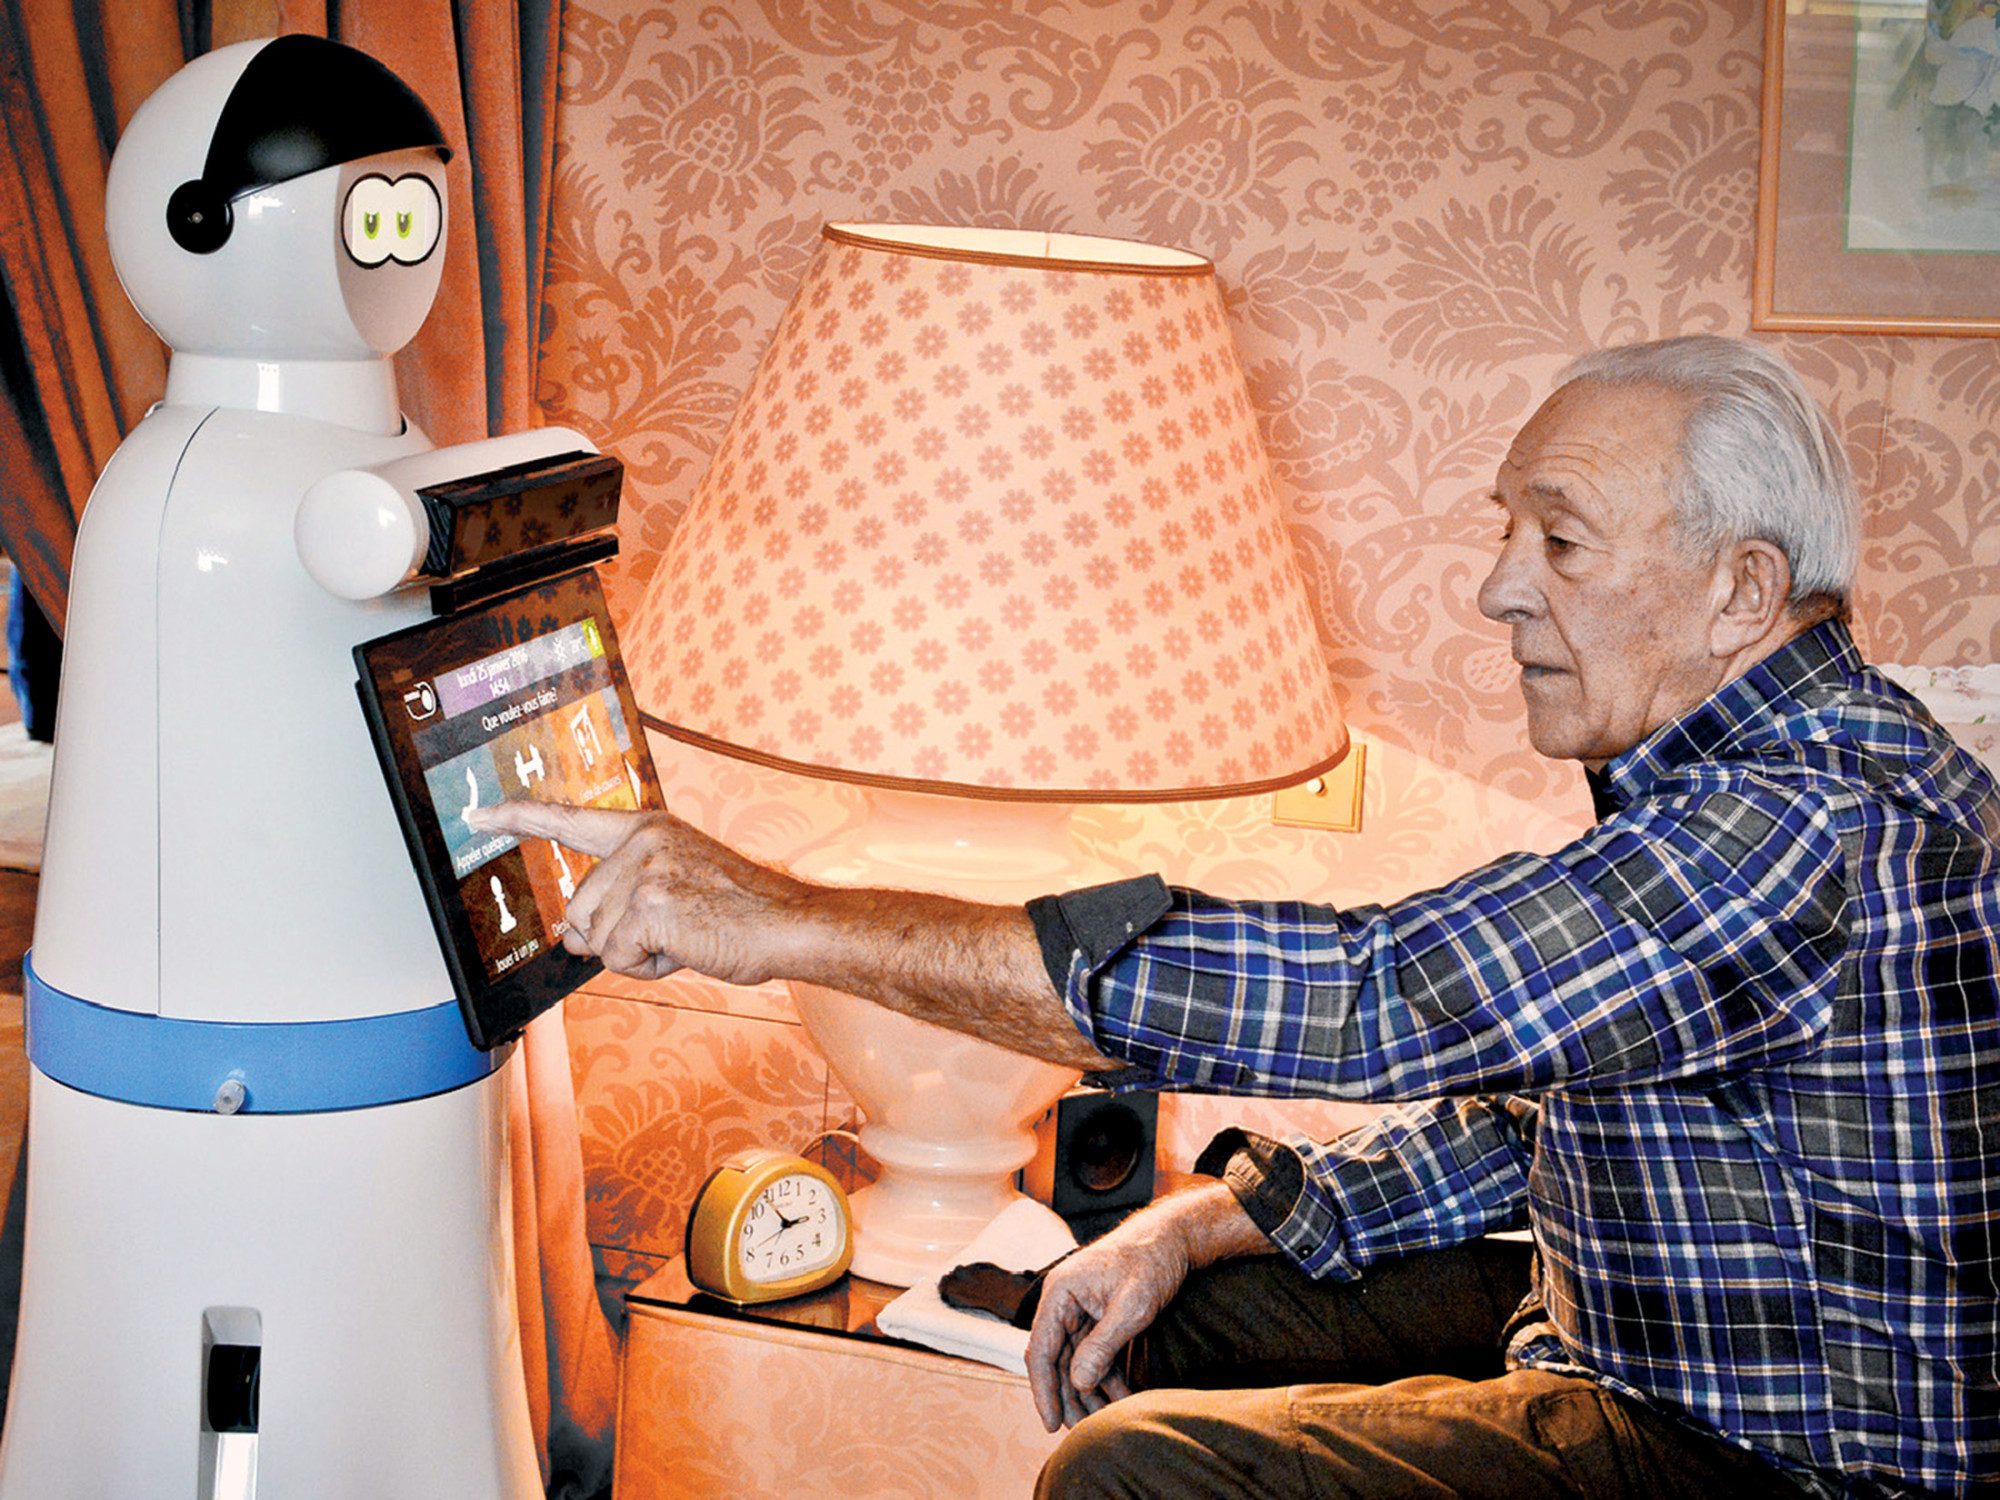 malt Jobtilbud En smule Europe Bets on Robots to Help Care for Seniors - Bloomberg